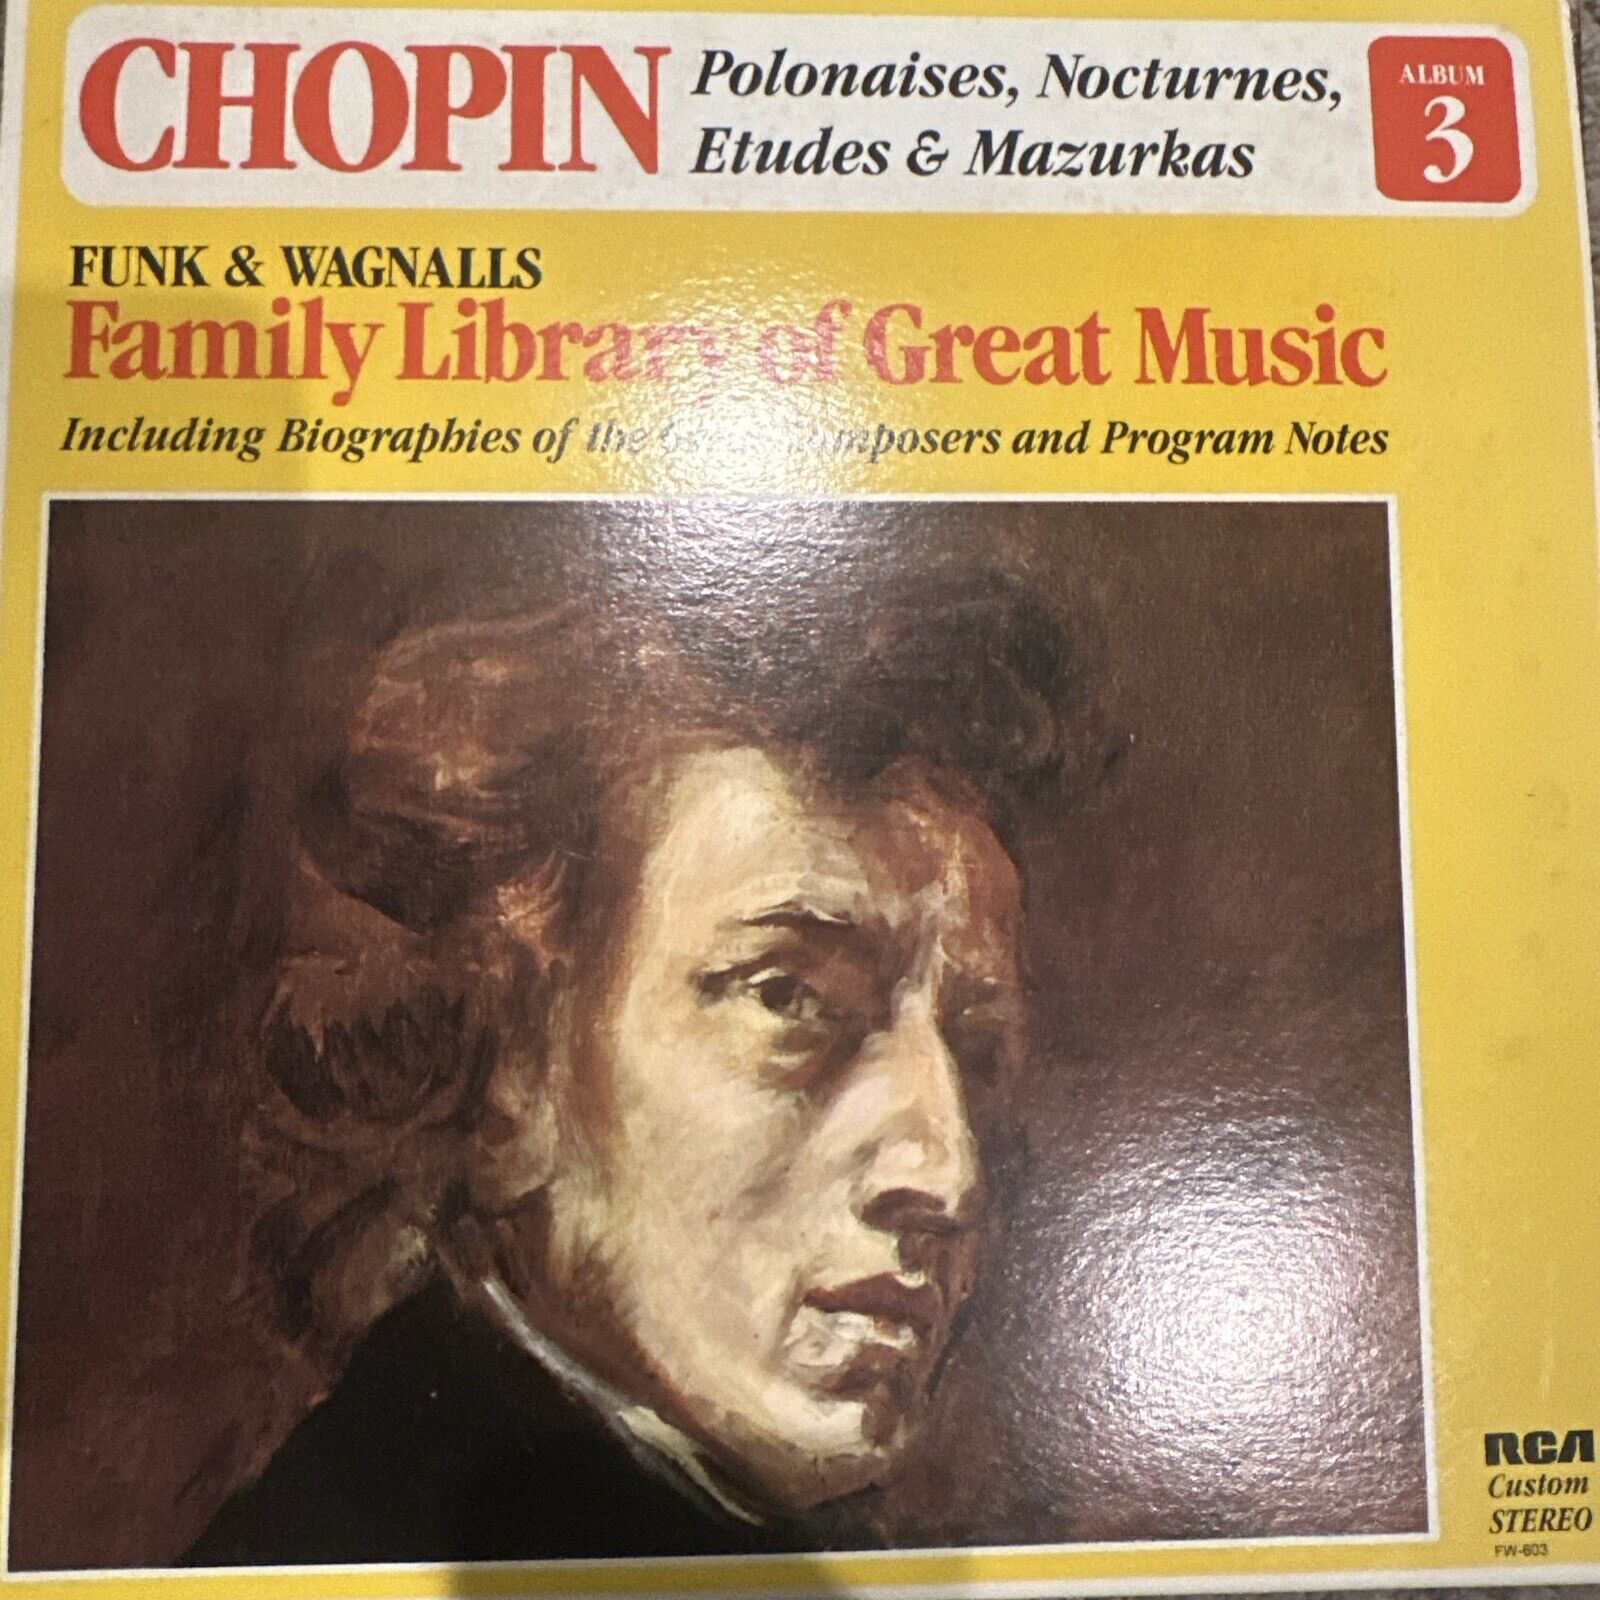 Frederic Chopin "Polonaises, Nocturnes, Etudes & Mazurkas" RCA LP 1984